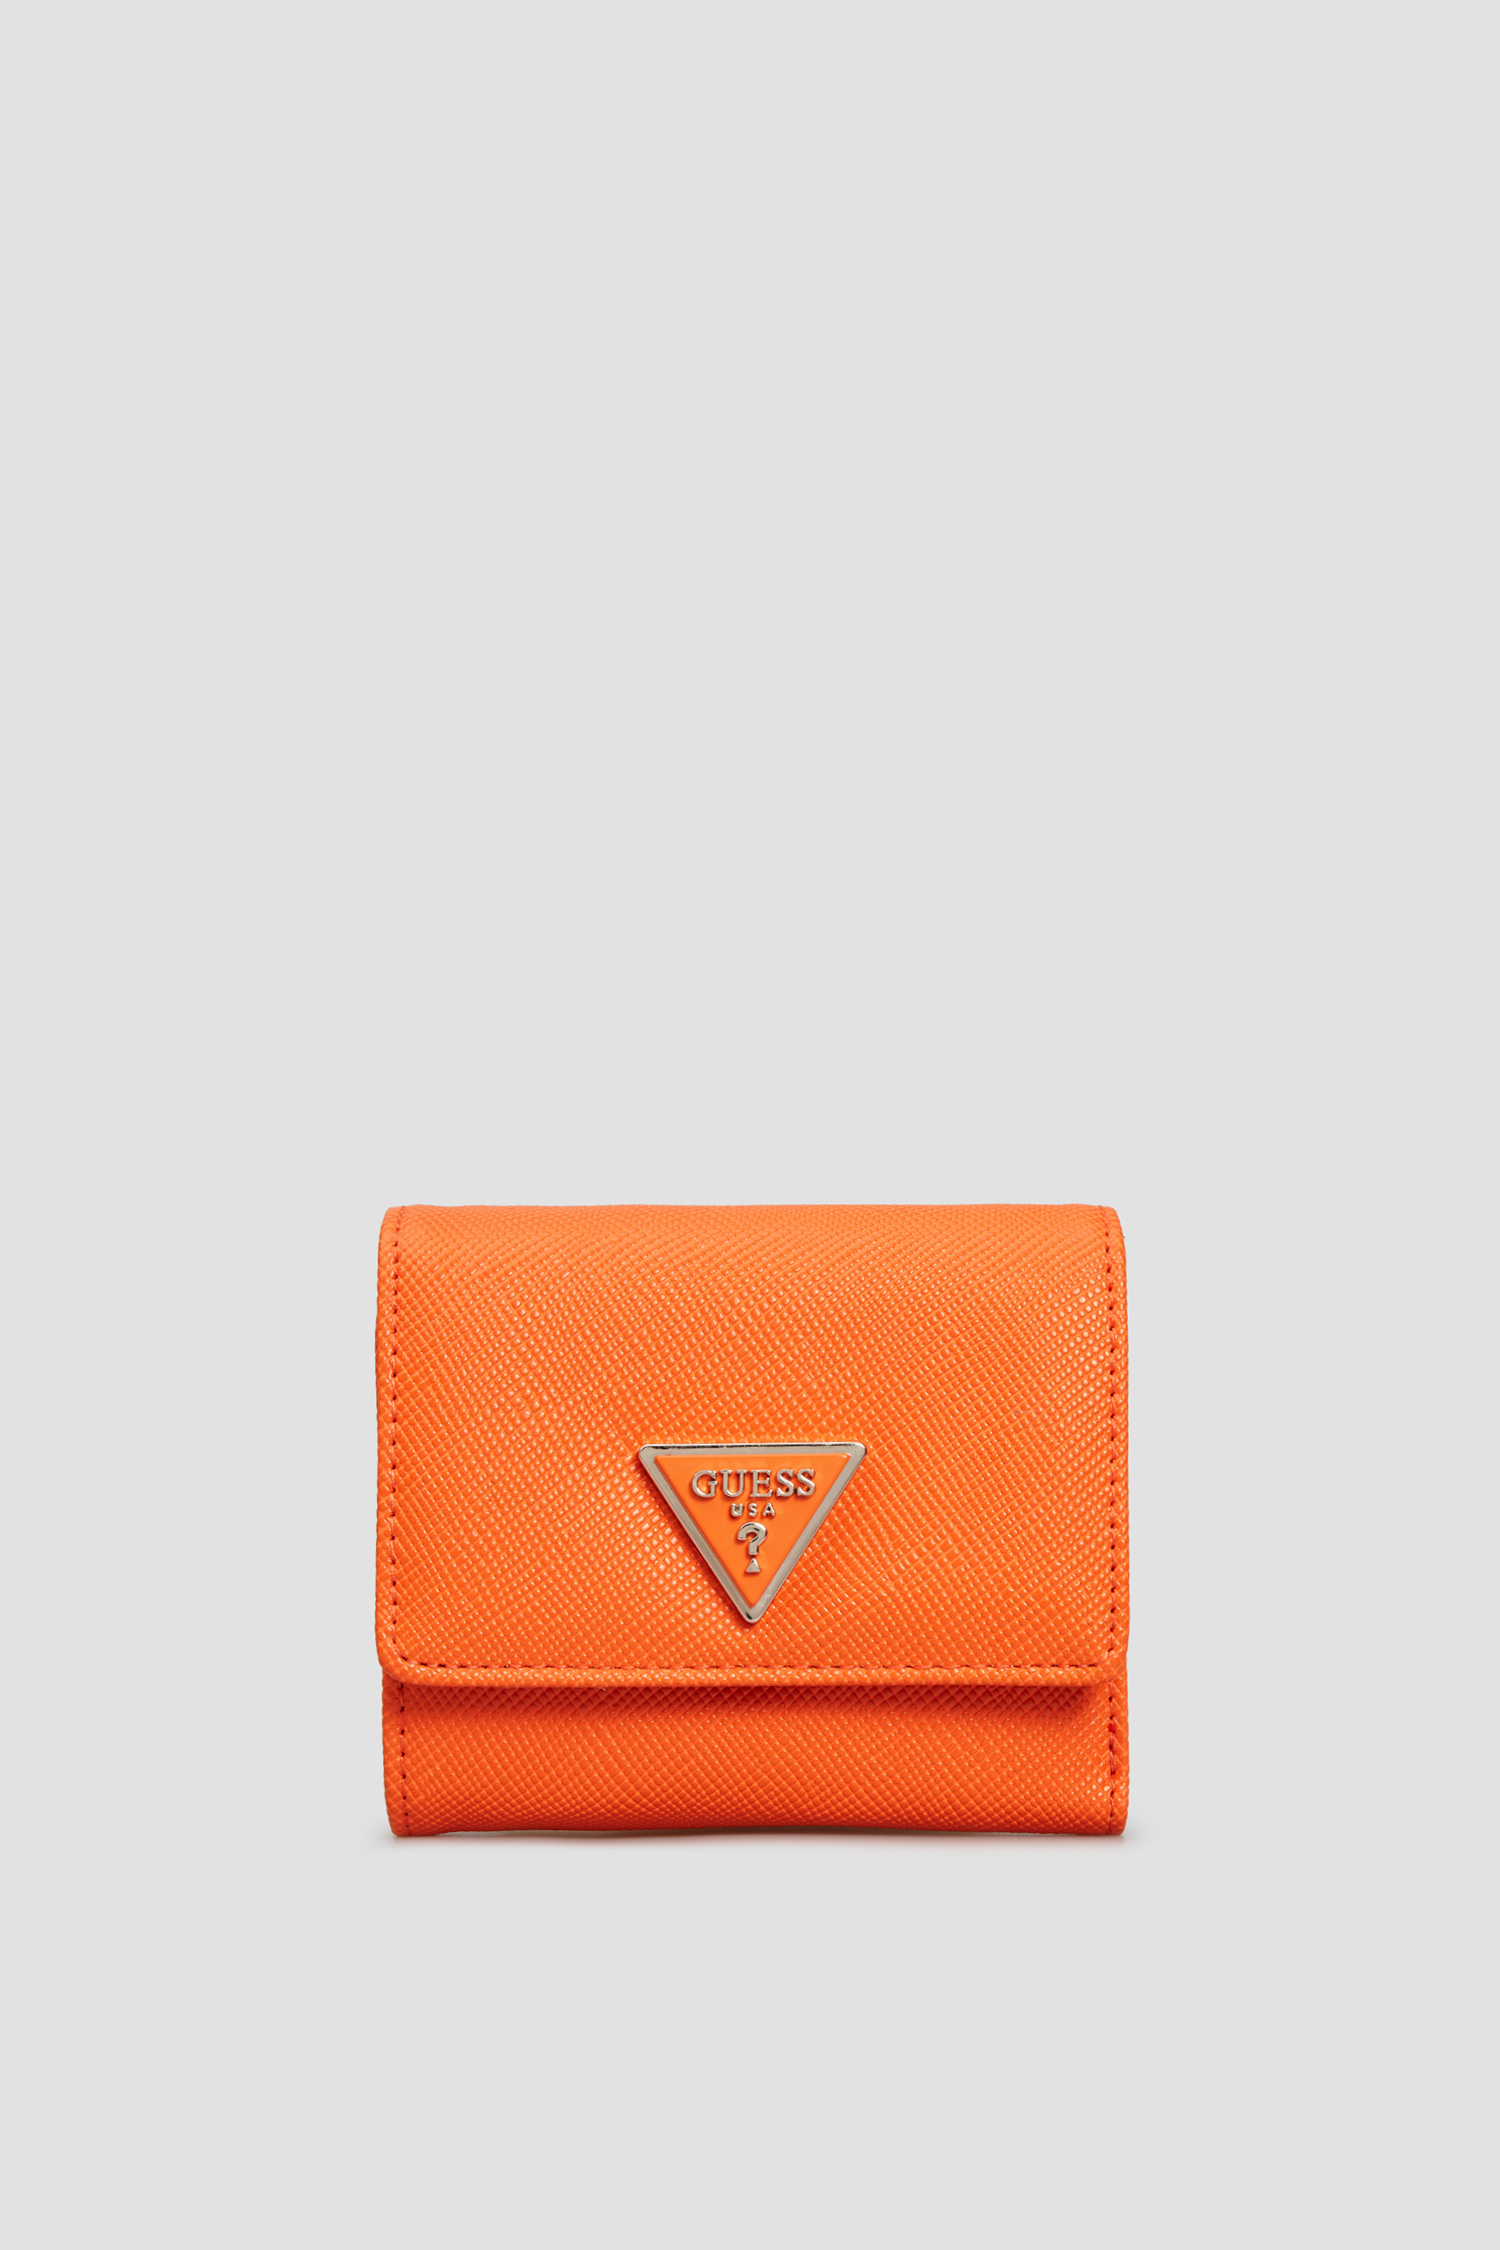 Оранжевый кошелек для девушек Guess SWVG81.30430;ORA